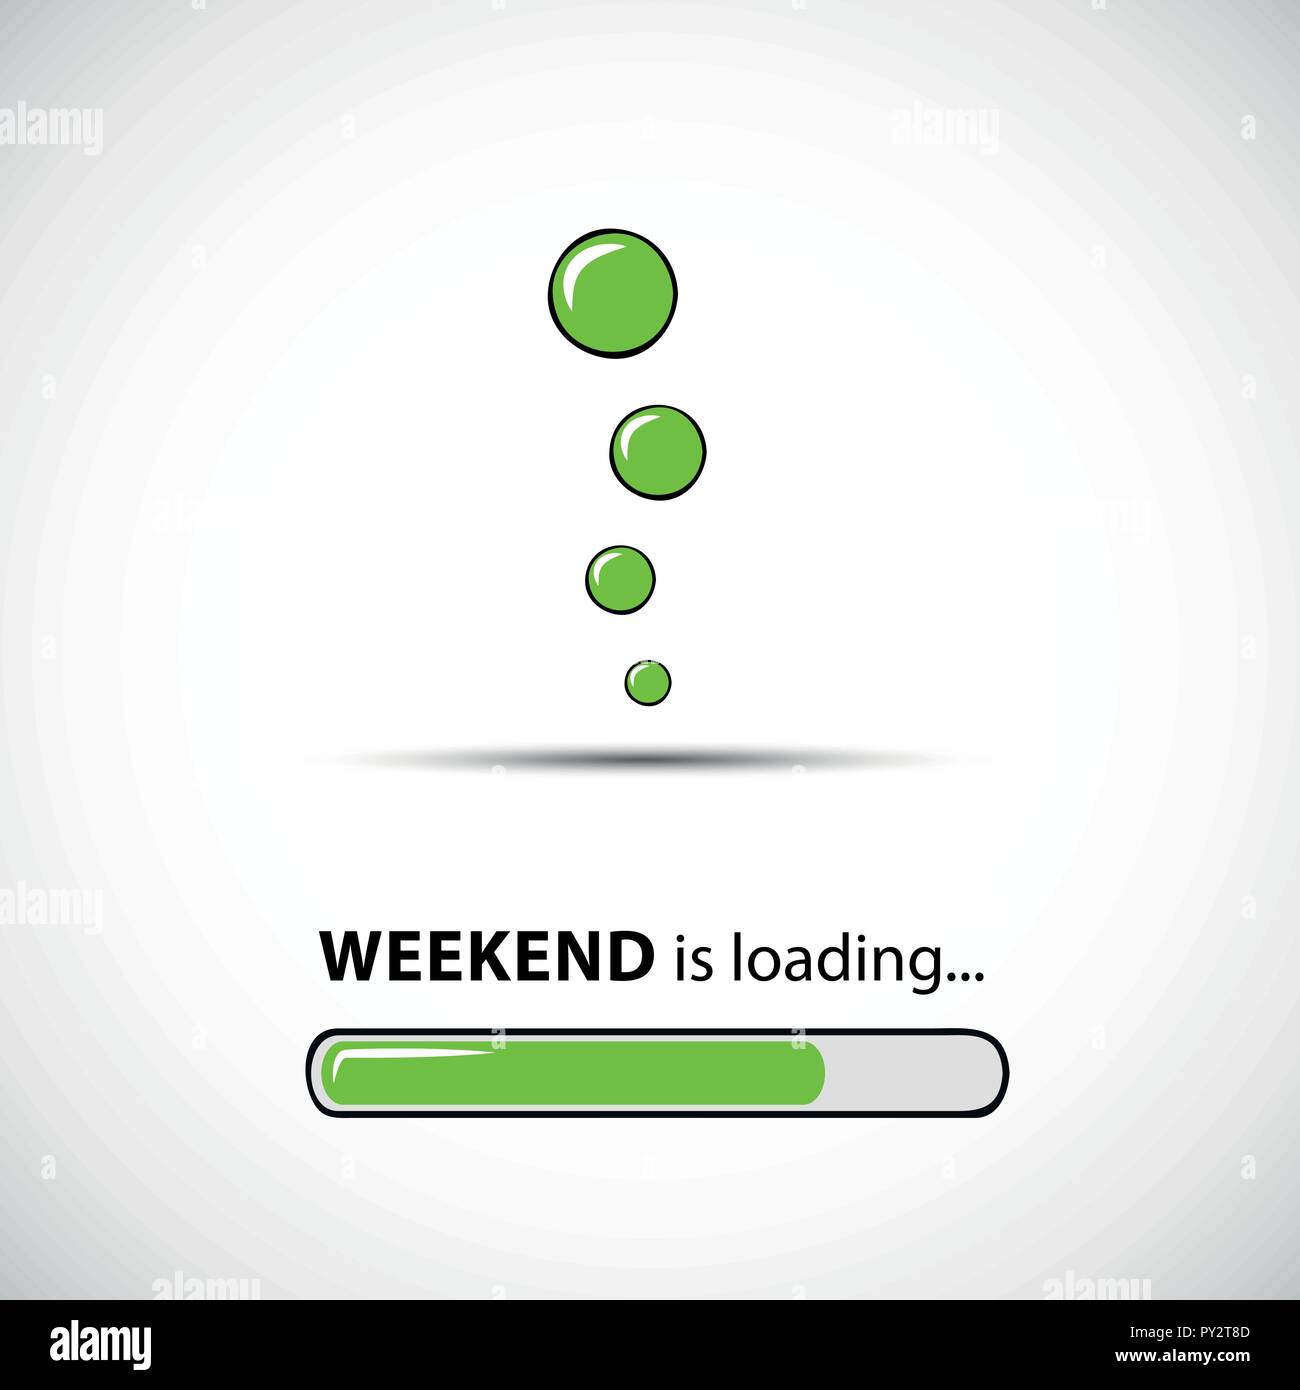 Wochenende laden Infografik mit grünen Balken und blasen  Vektor-illustration EPS 10 Stock-Vektorgrafik - Alamy